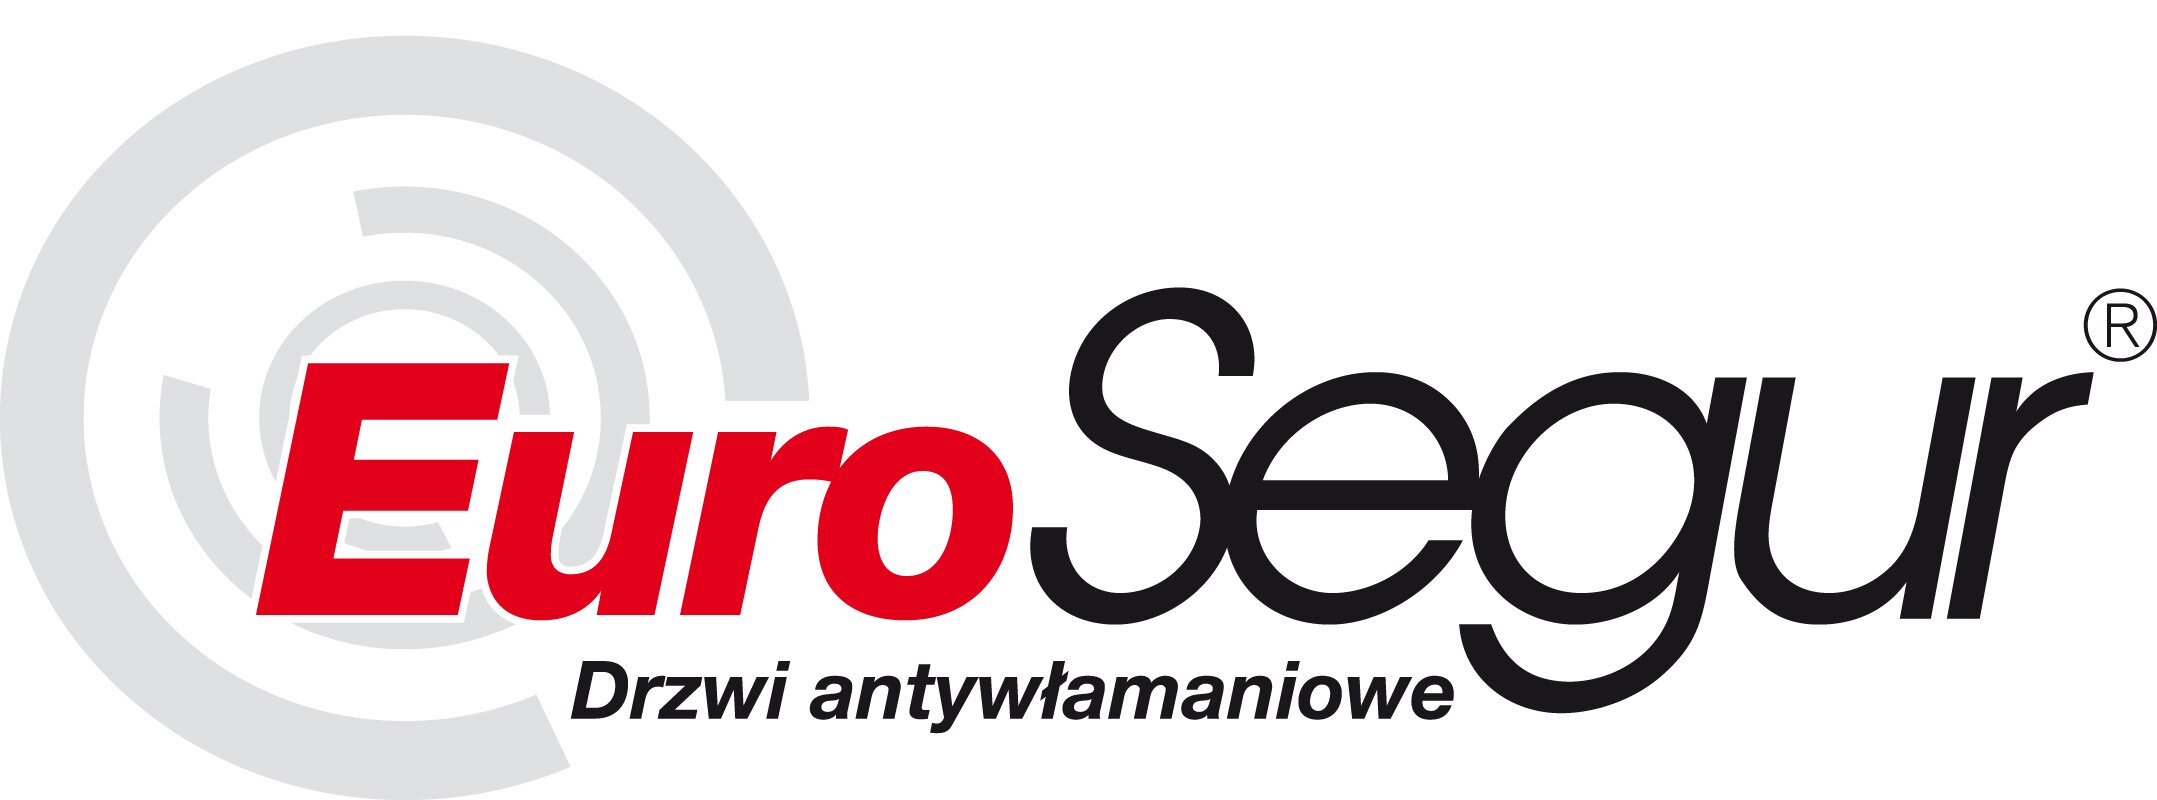 Eurosegur logo polaco